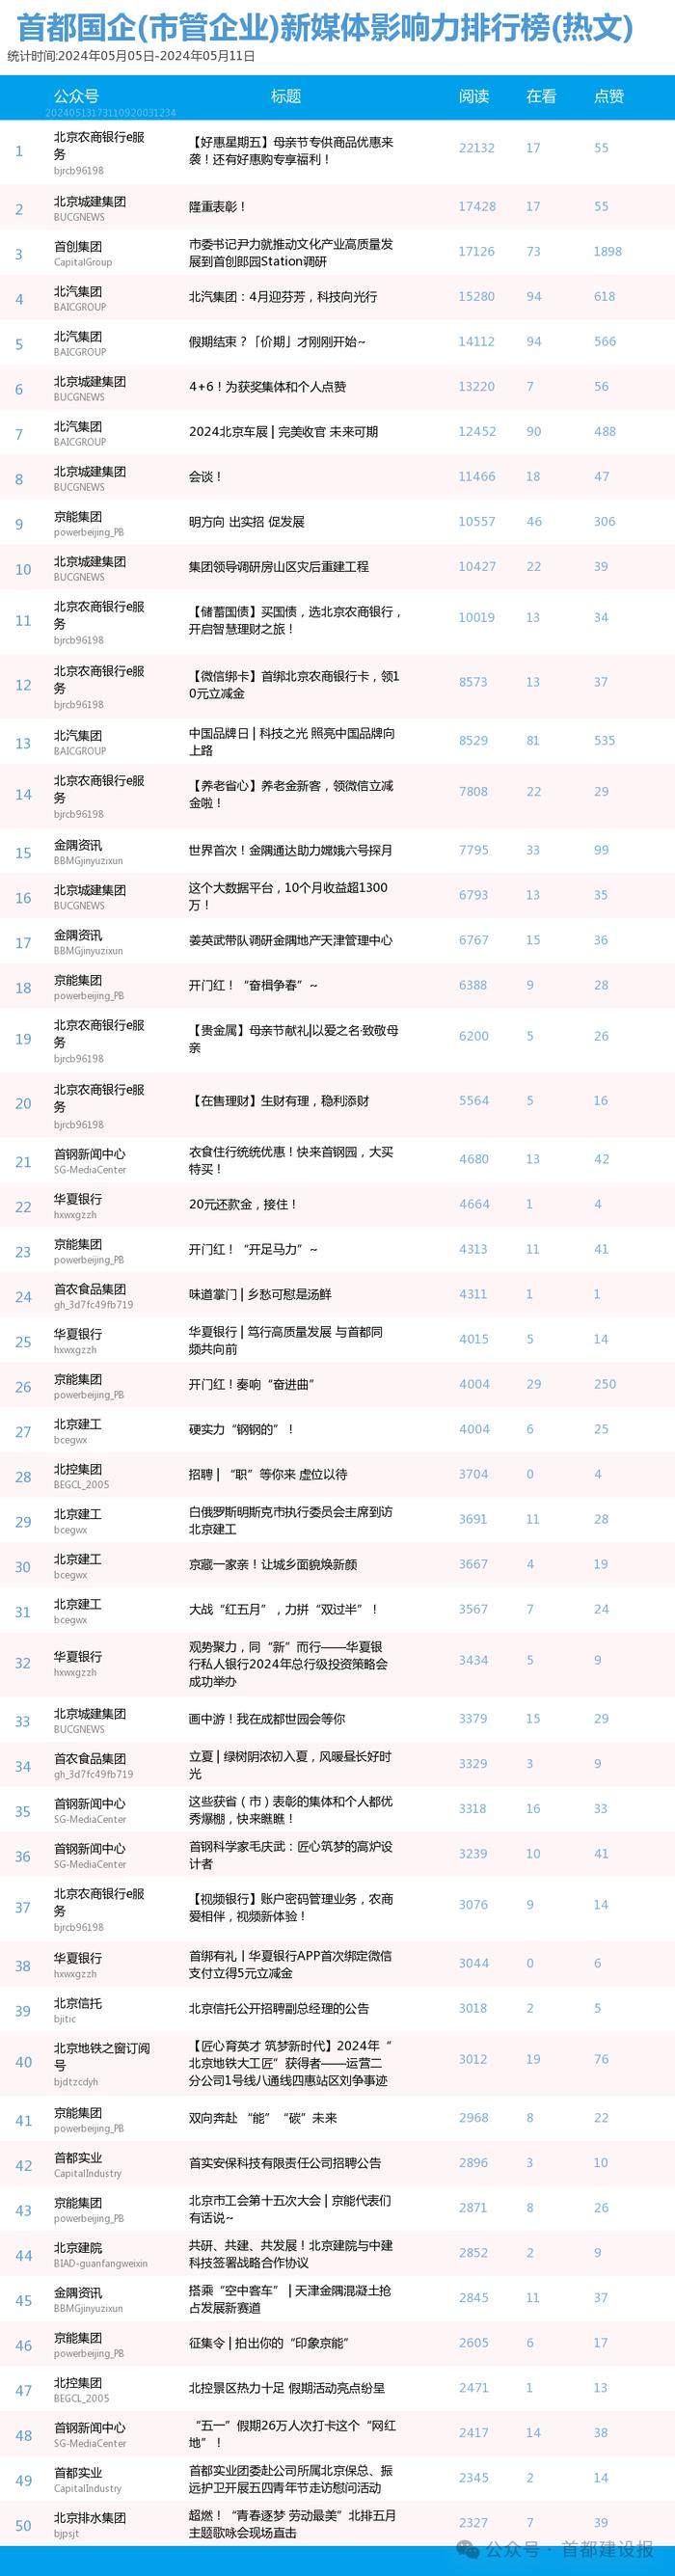 【北京国企新媒体影响力排行榜】5月周榜(5.5-5.11)第407期